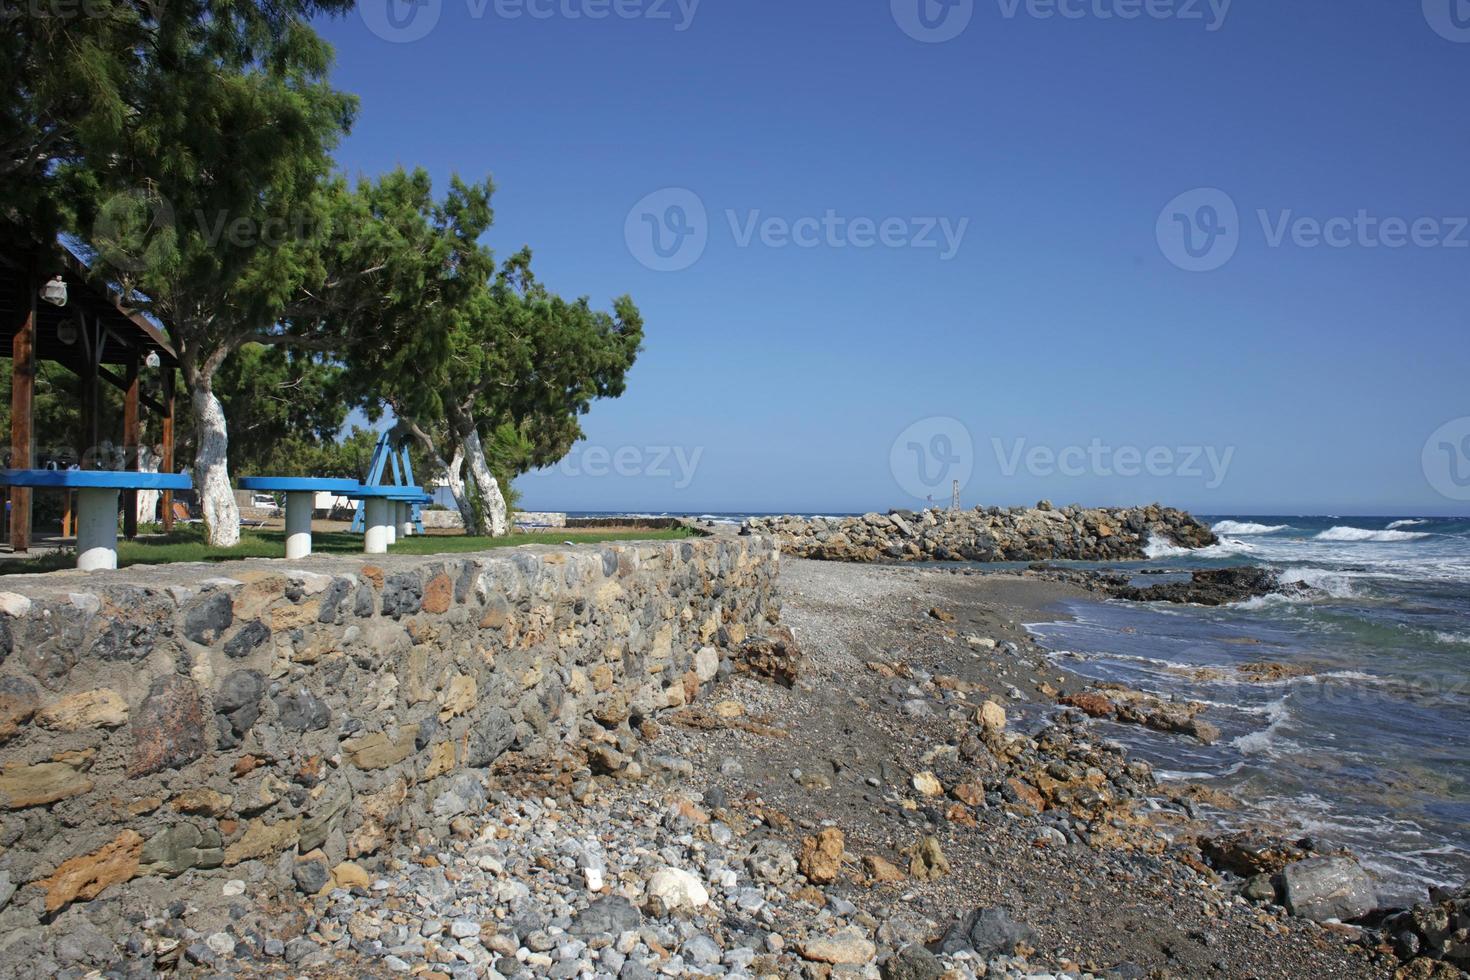 strand frangokastello in creta eiland griekenland moderne zomer achtergrond foto